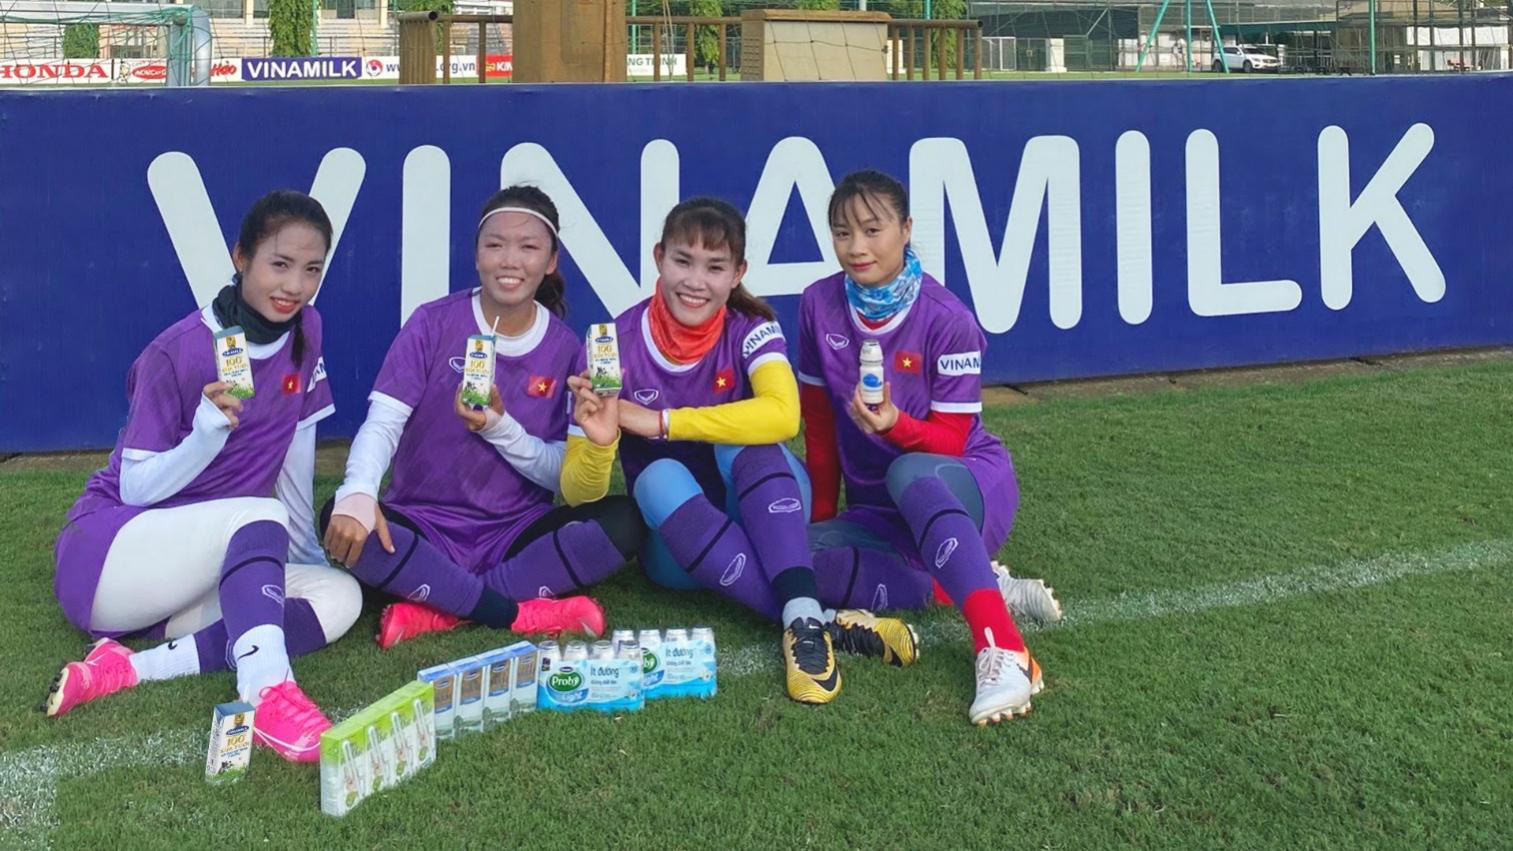 Vinamilk trao thưởng 500 triệu tiền mặt và 2 năm sử dụng sản phẩm để chúc mừng thành tích đội tuyển bóng đá nữ quốc gia - Ảnh 4.